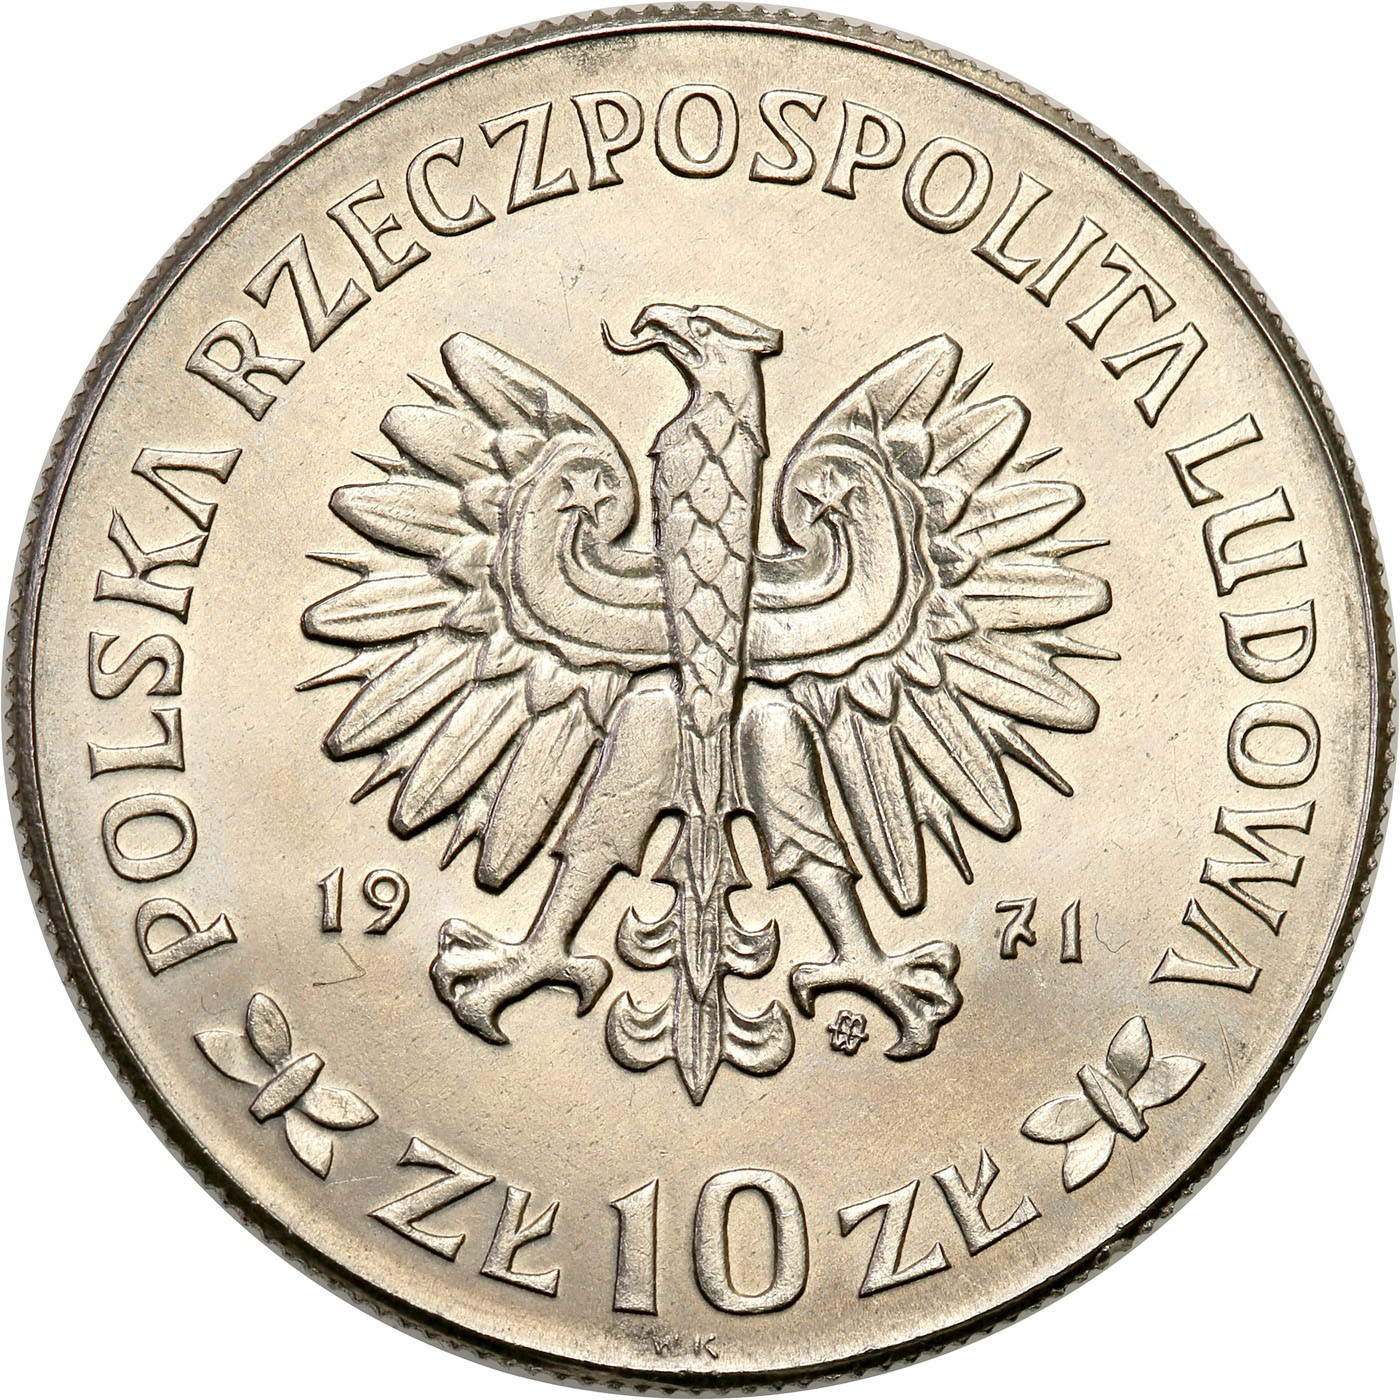 PRL. PRÓBA Nikiel 10 złotych 1971 – Powstanie Śląskie